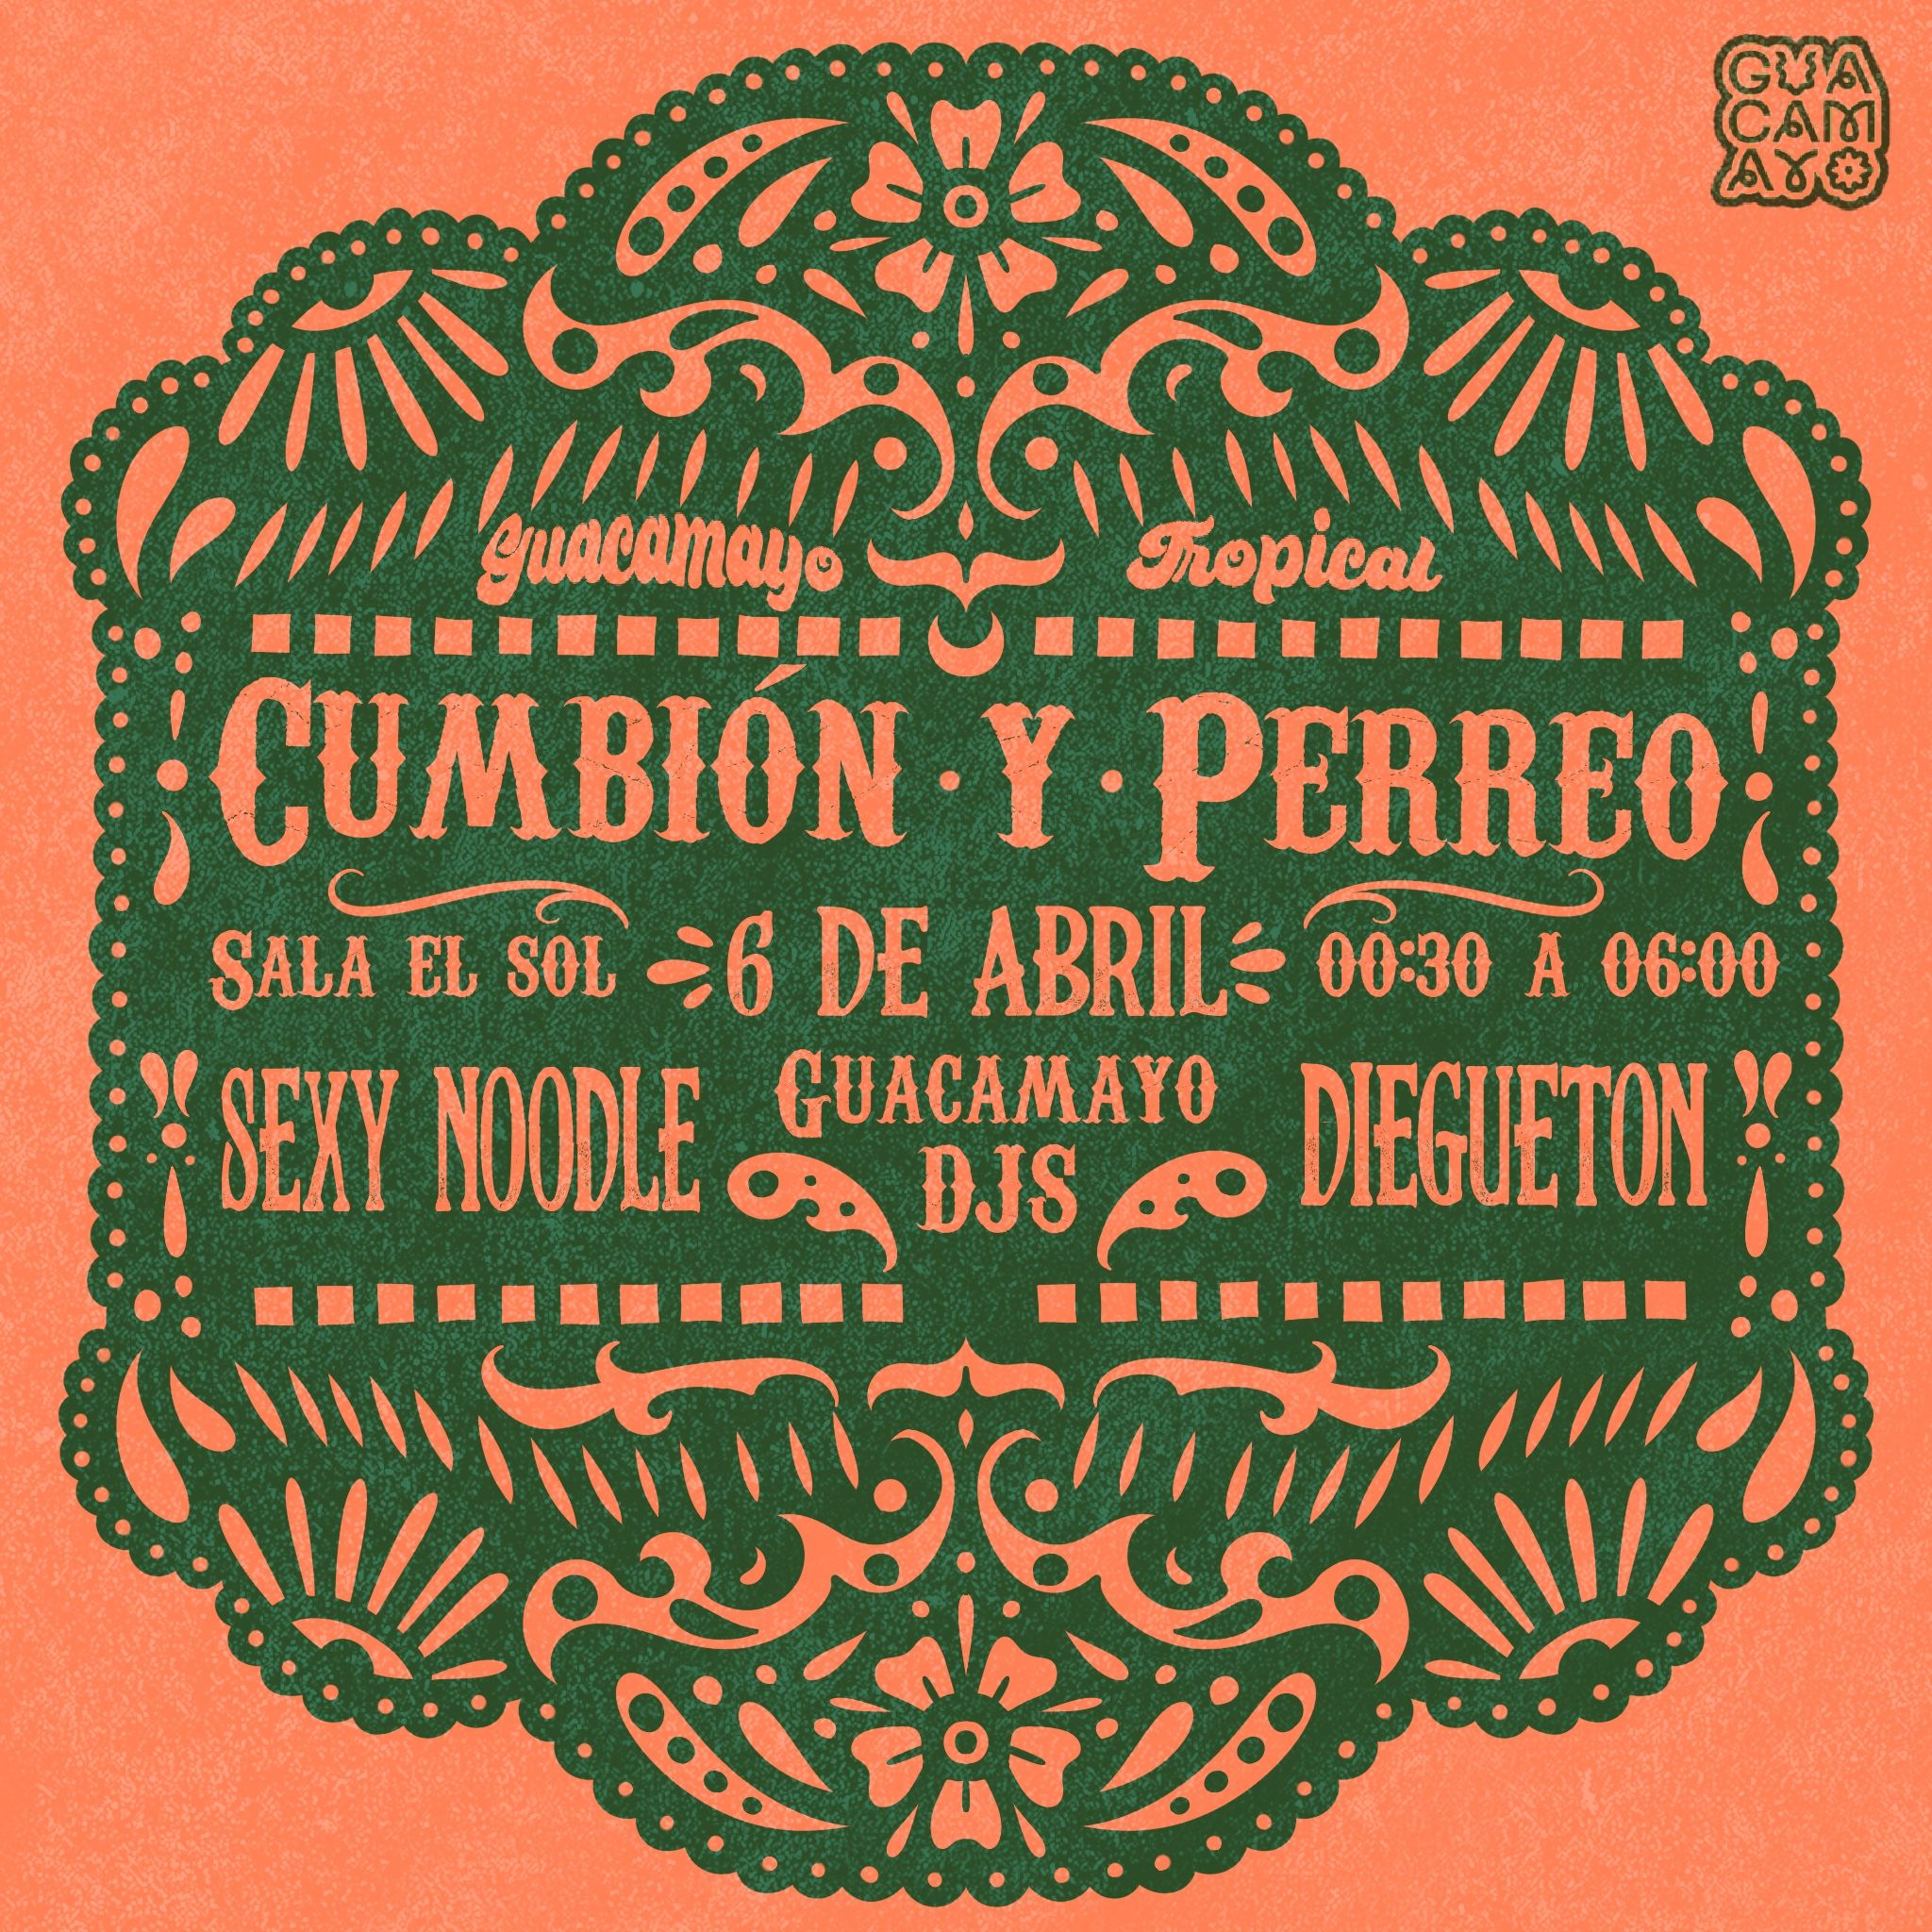 Guacamayo Tropical presenta: Cumbión y Perreo con Sexxy Noodle, Diegueton y Guacamayo DJs